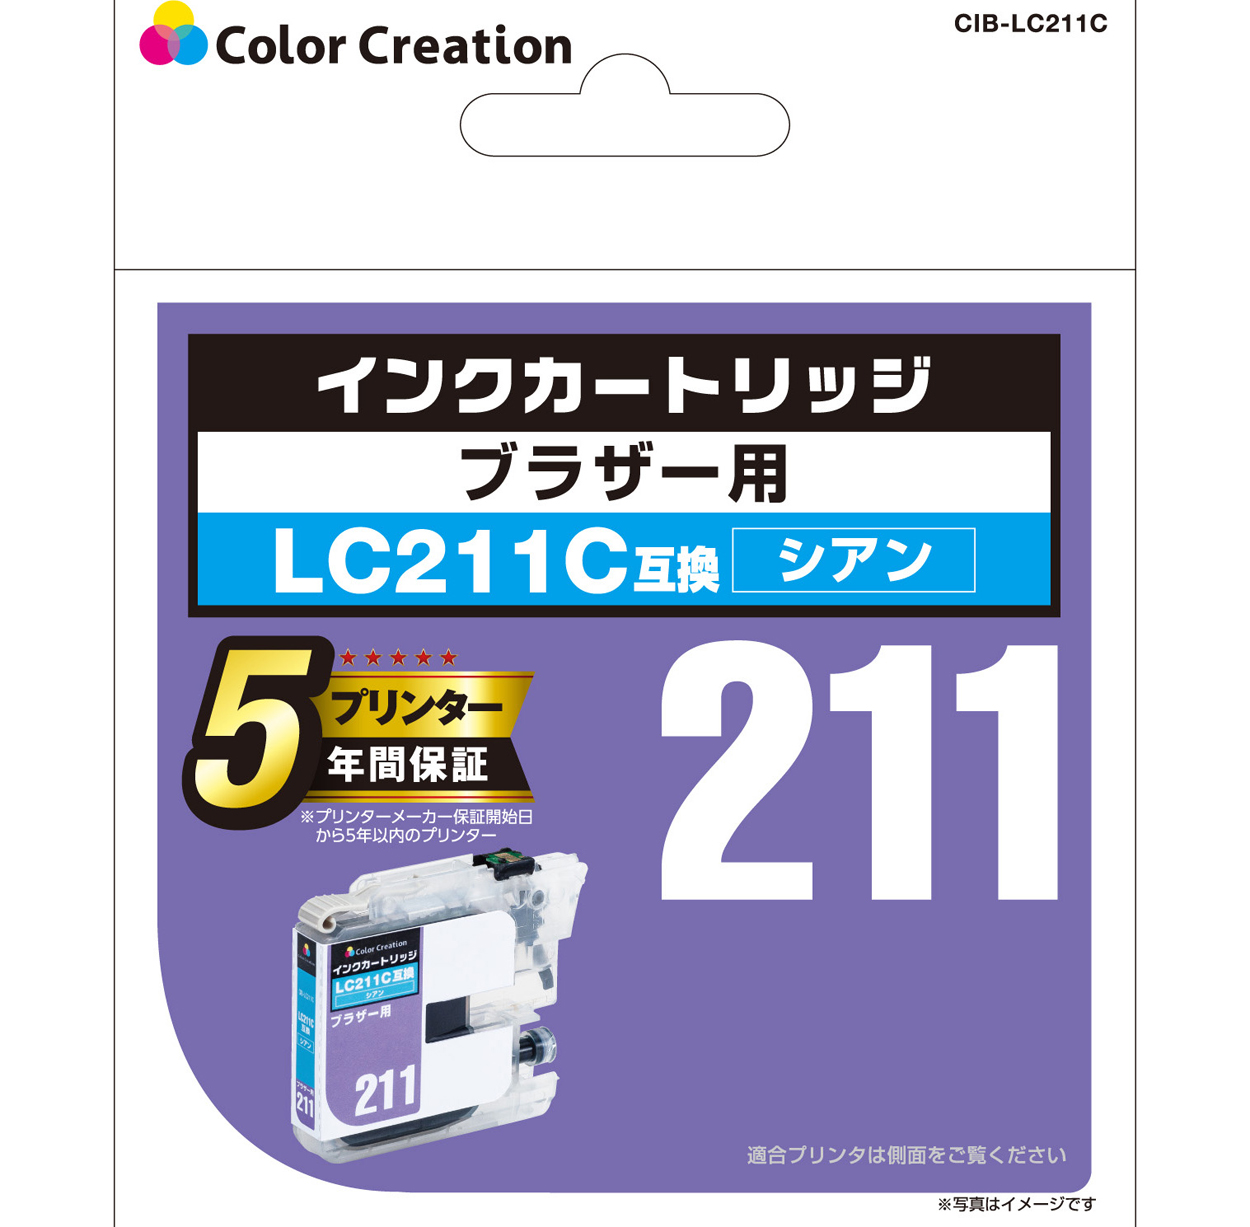 ブラザー LC211C互換 インクカートリッジ CIB-LC211C | ColorCreation 